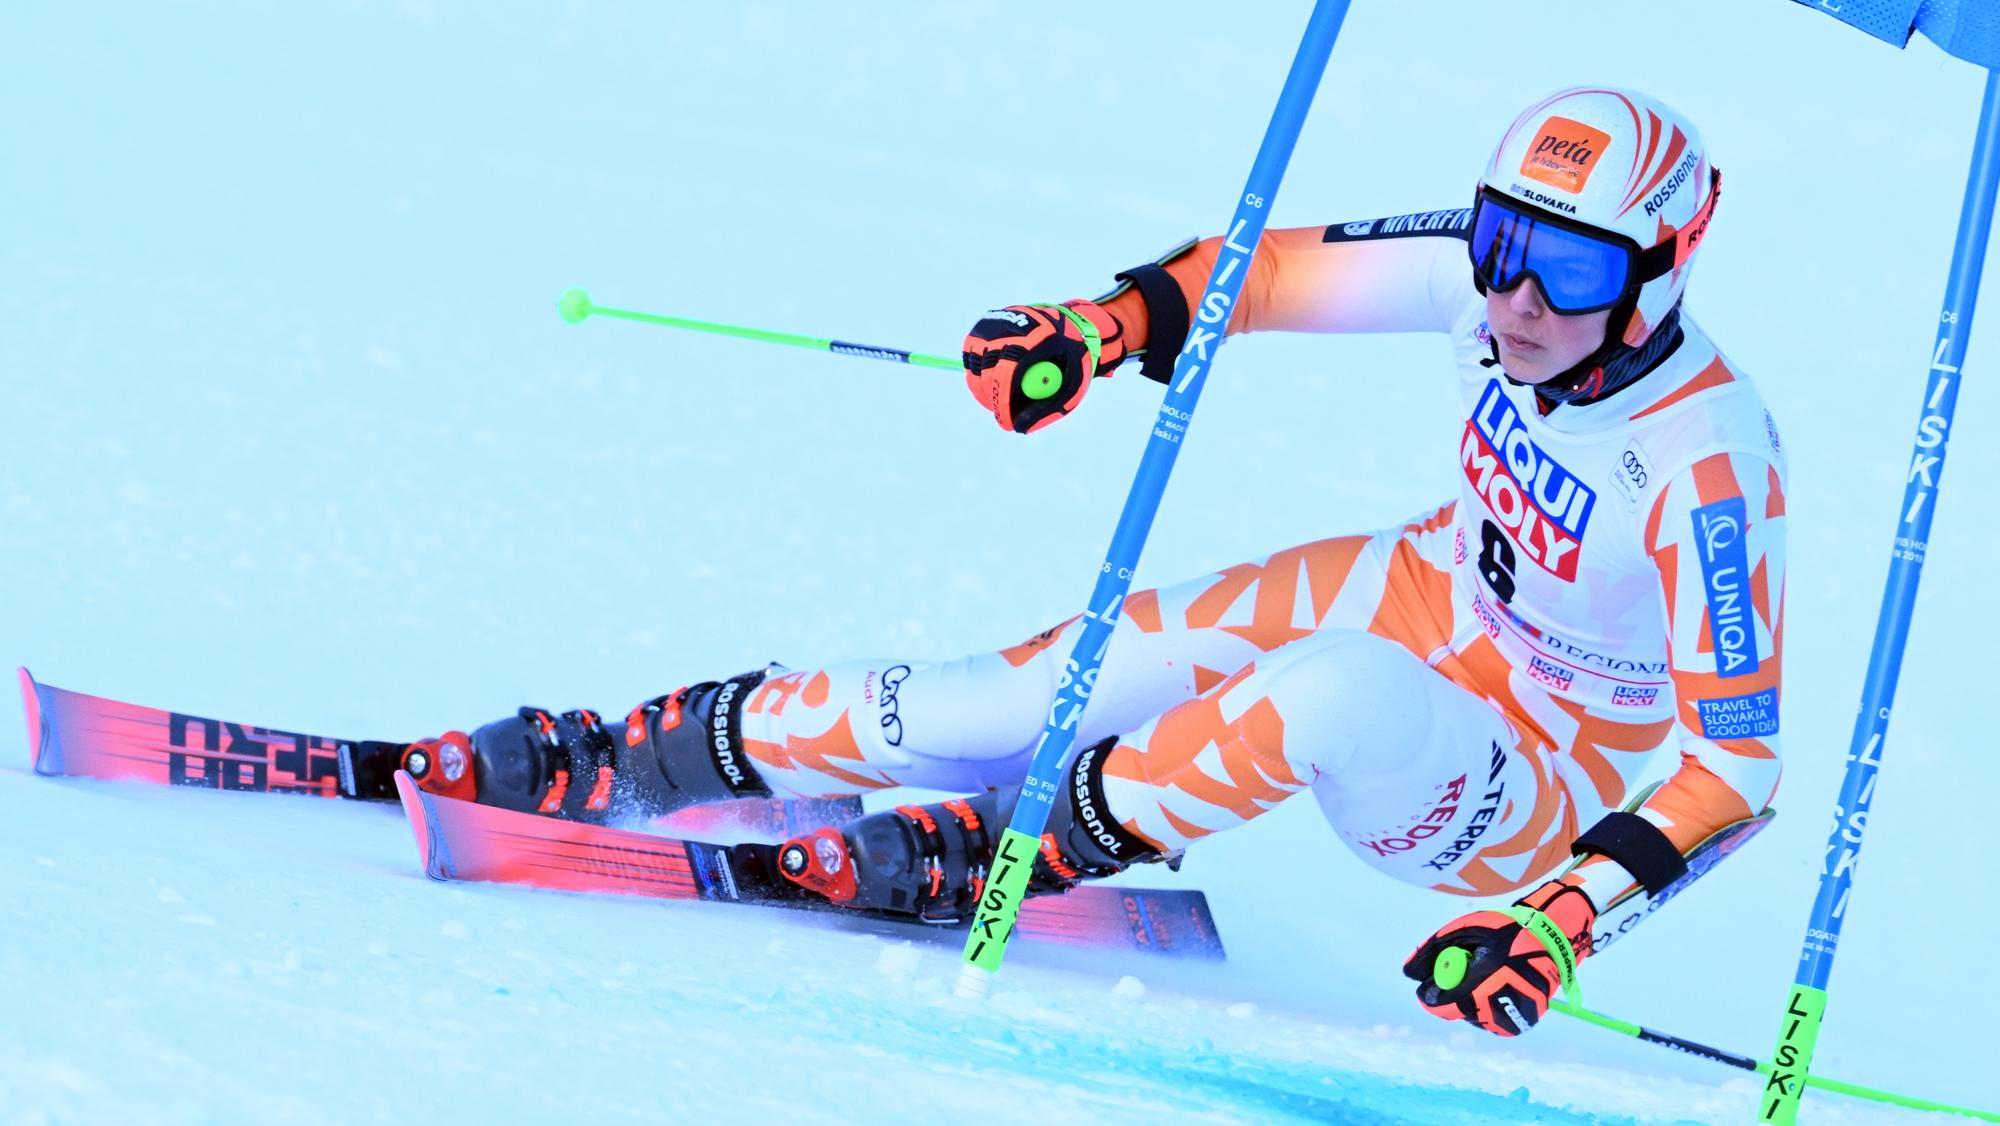 LIVE : Petra Vlhová dnes - 1 kolo obrovský slalom / Semmering | Šport.sk